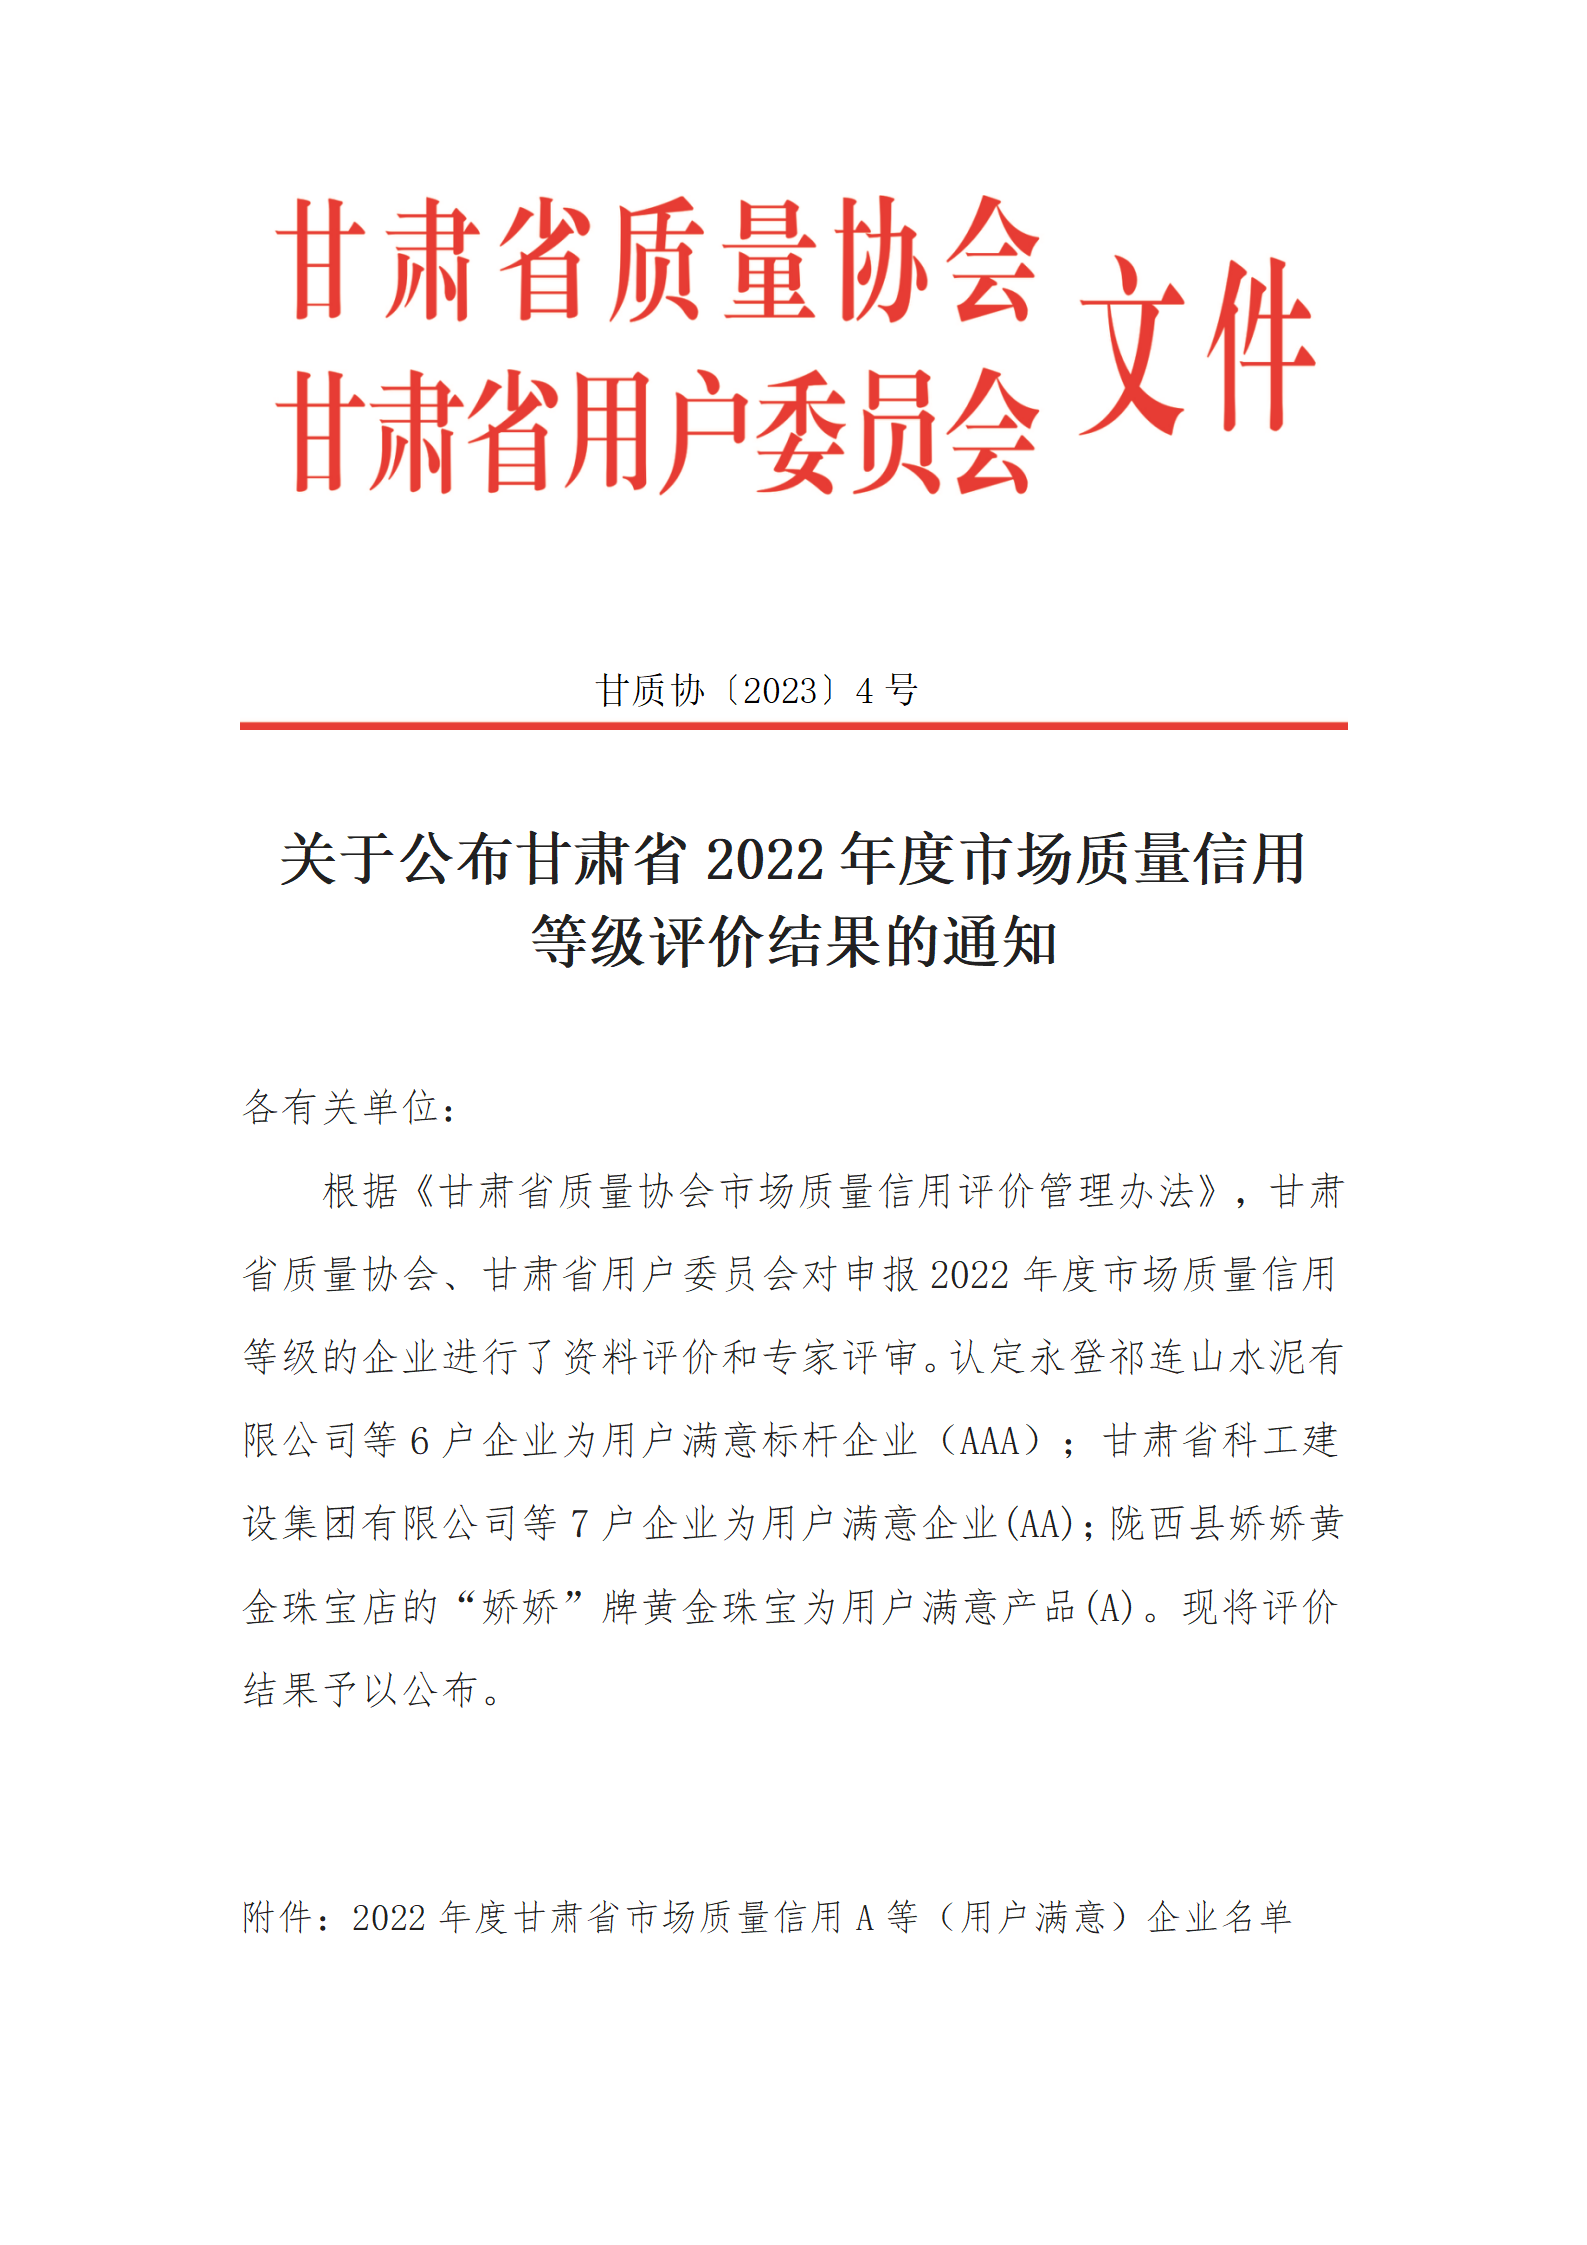 关于甘肃省2022年度市场质量信用等级评价结果的公示通知_01.png